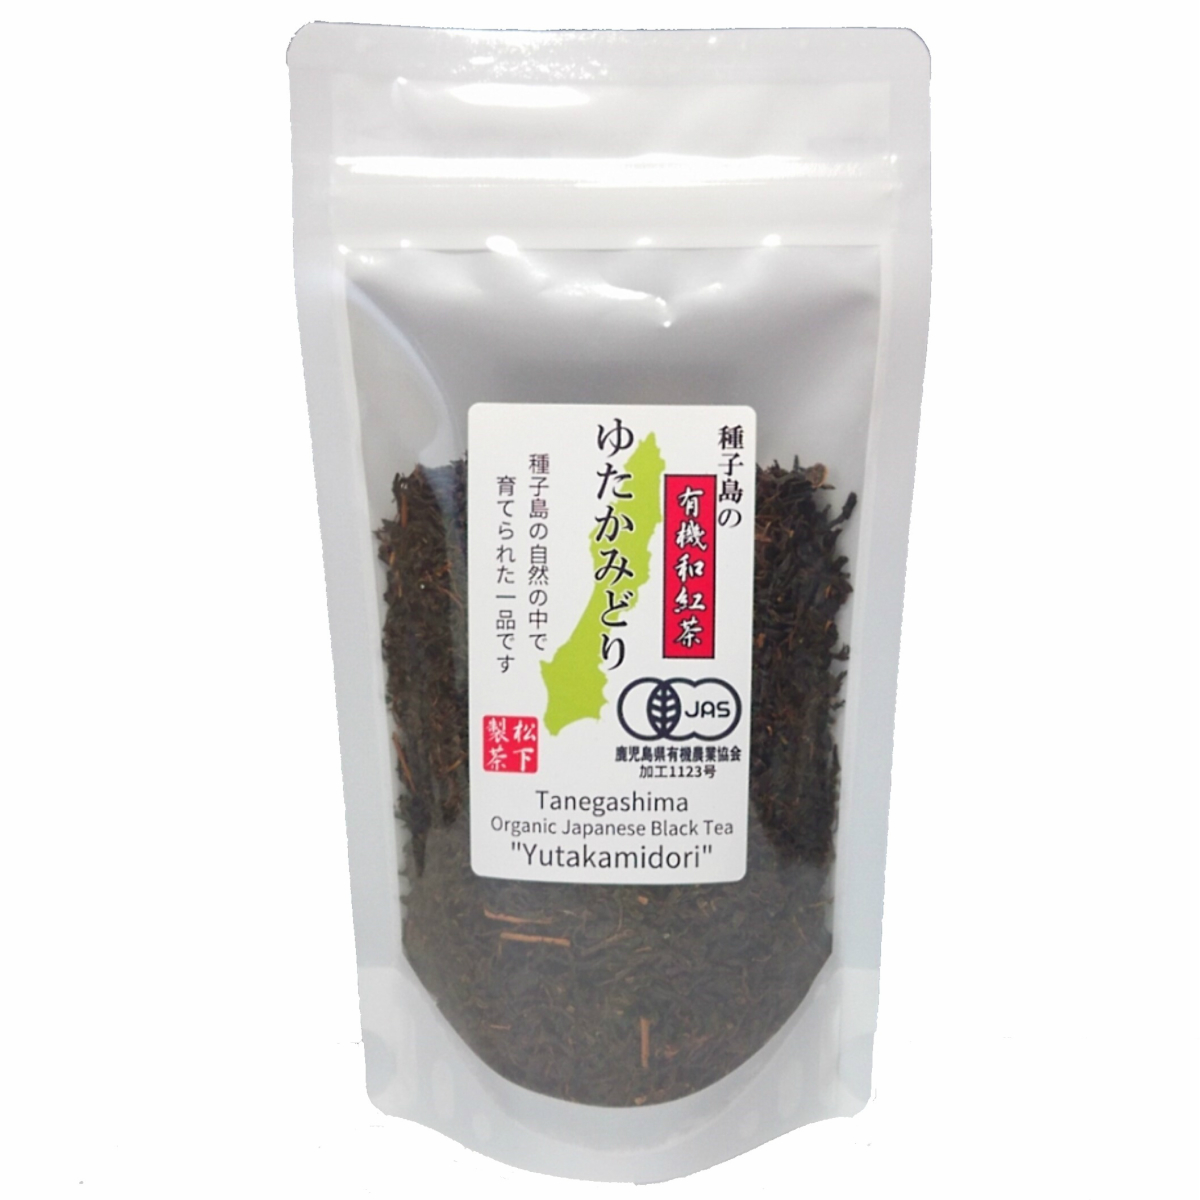 種子島の有機和紅茶『ゆたかみどり』 茶葉(リーフ) 60g 松下製茶